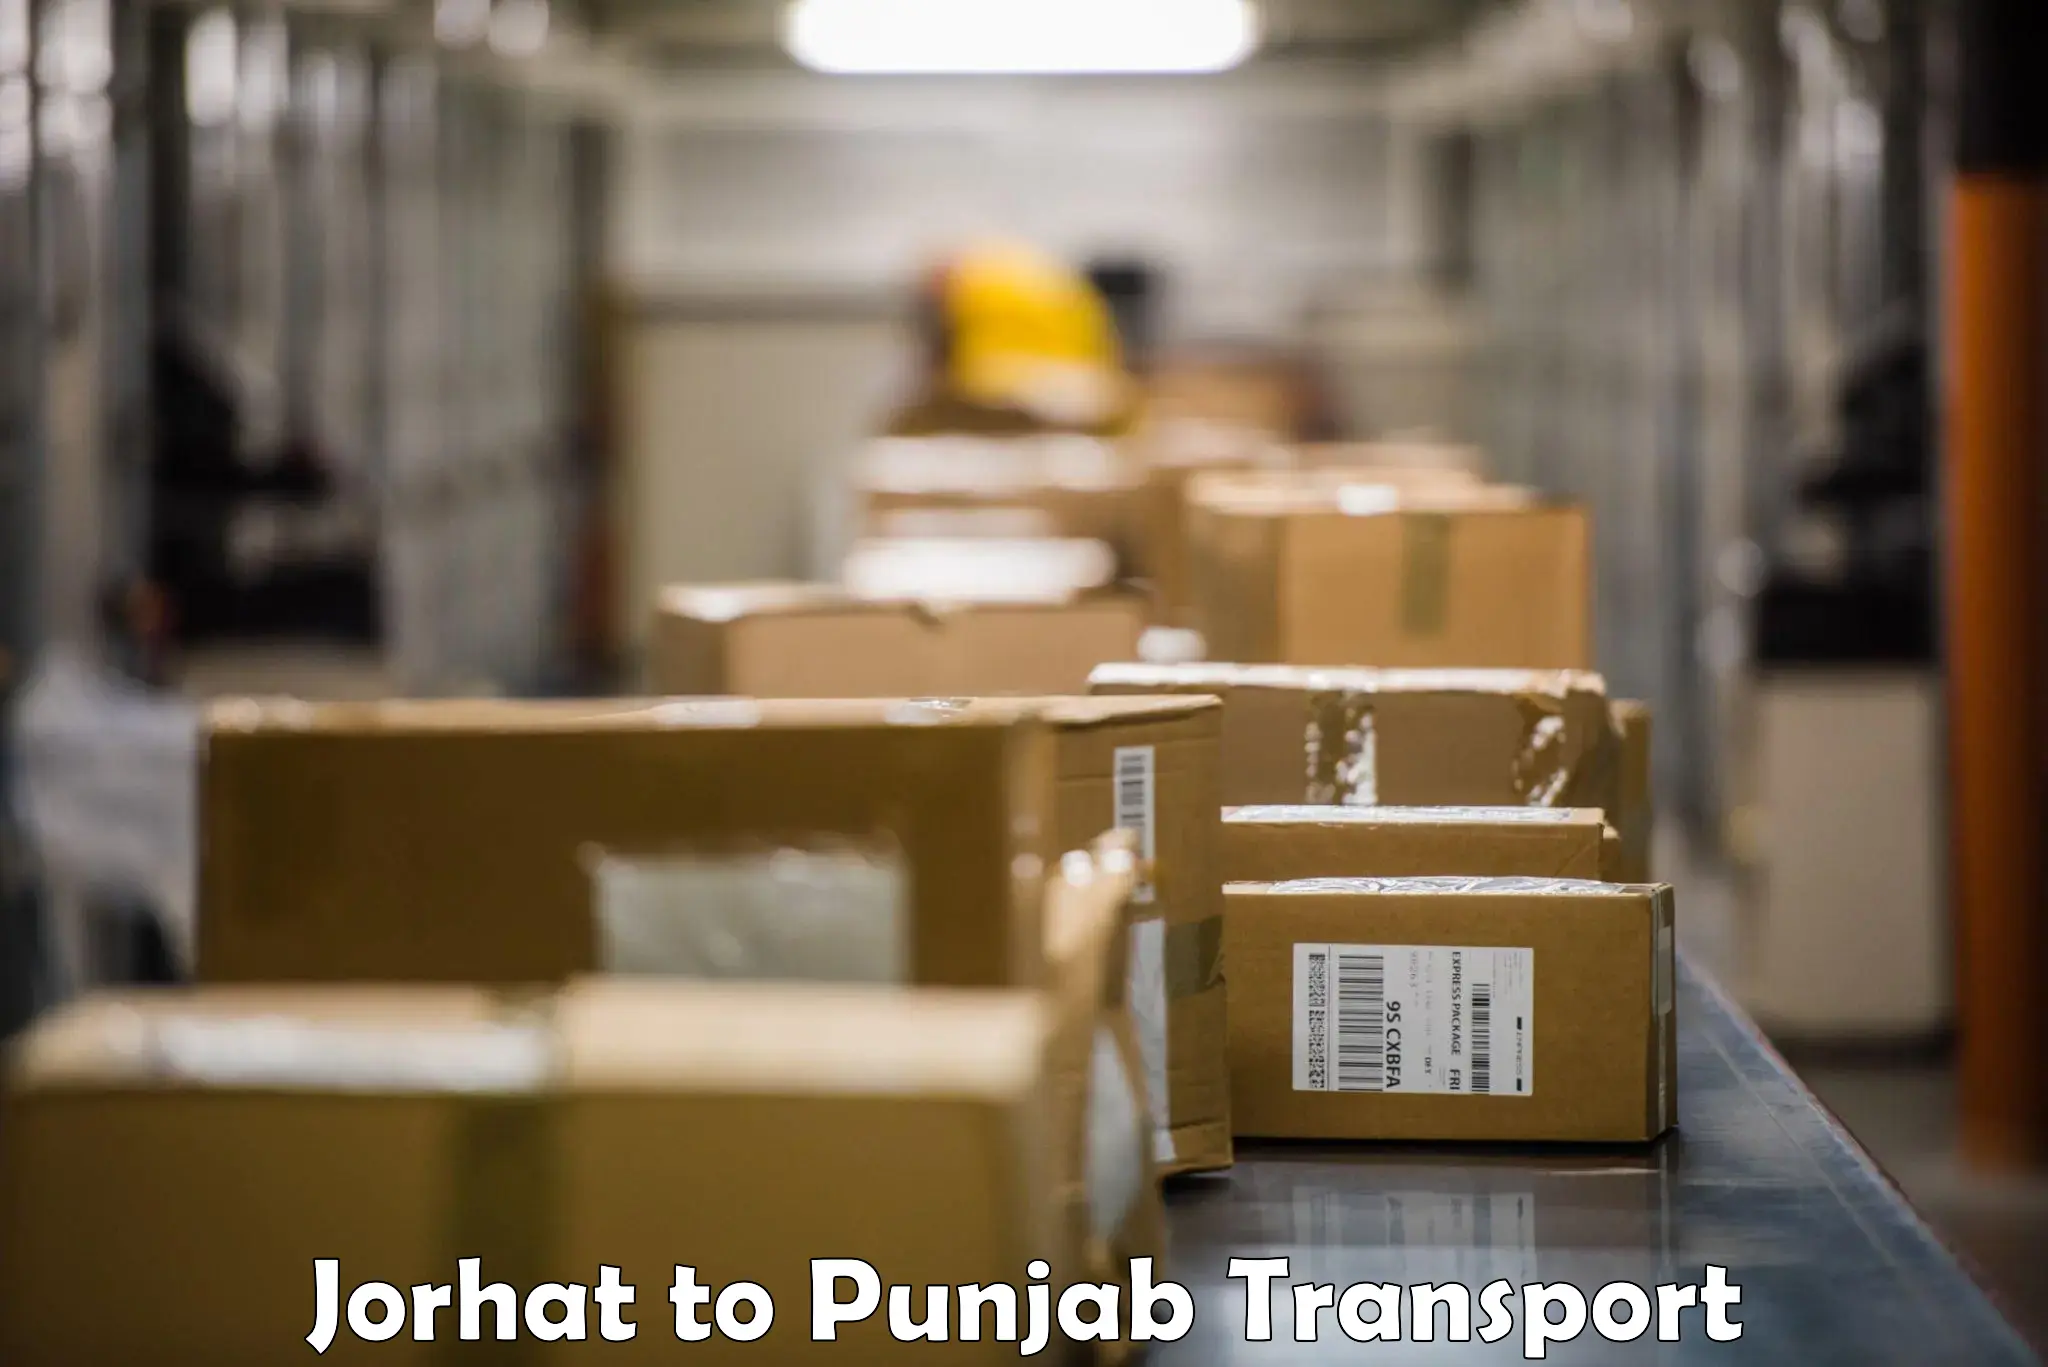 Furniture transport service Jorhat to Sirhind Fatehgarh